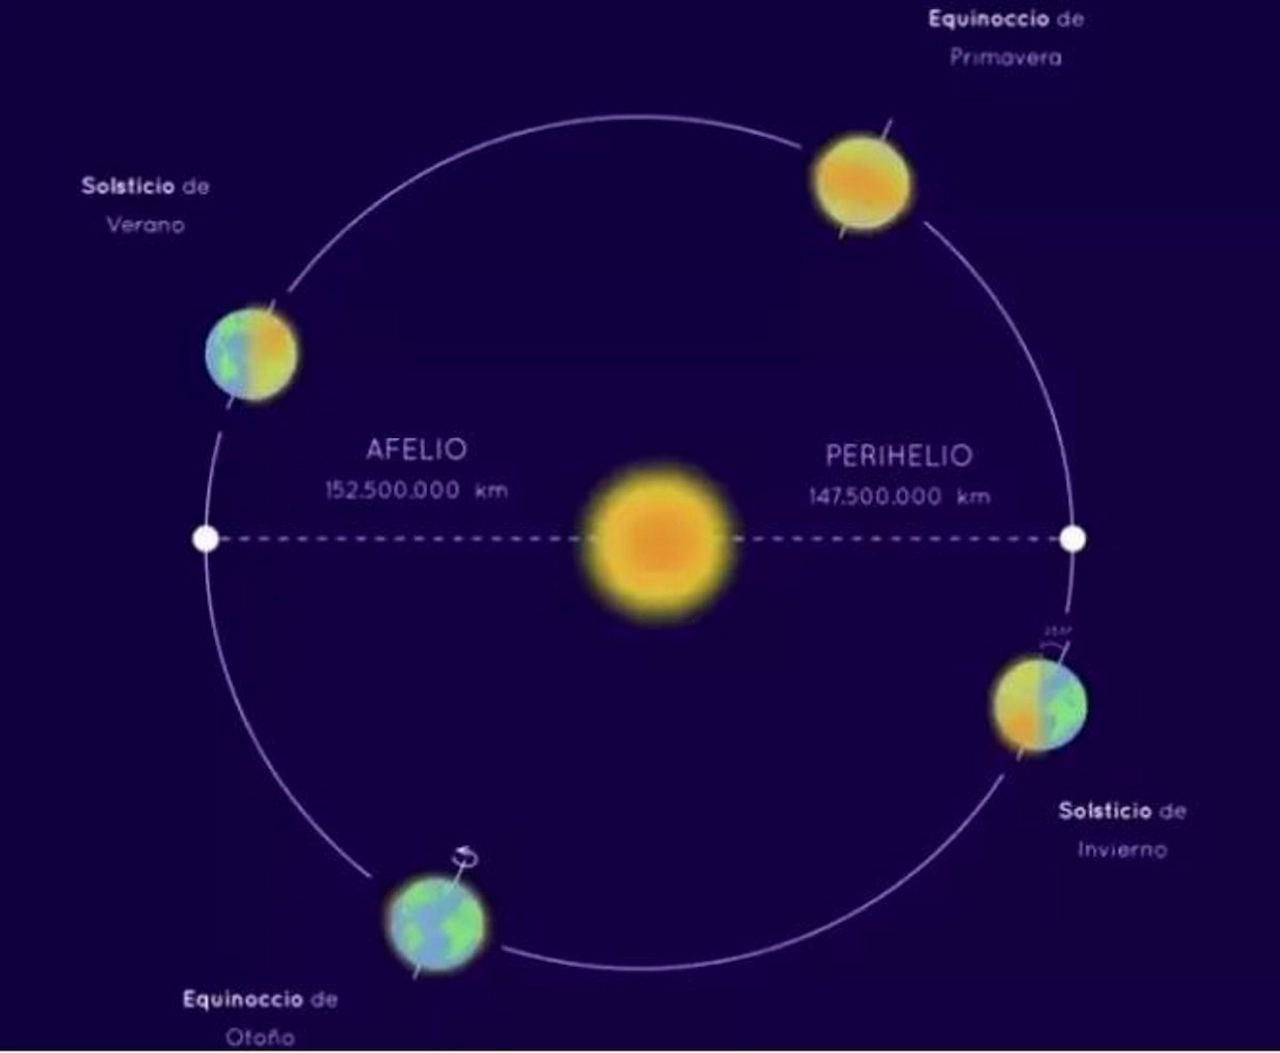 Afelio y perihelio de la Tierra en su órbita en torno al Sol / Imagen: Wikimedia